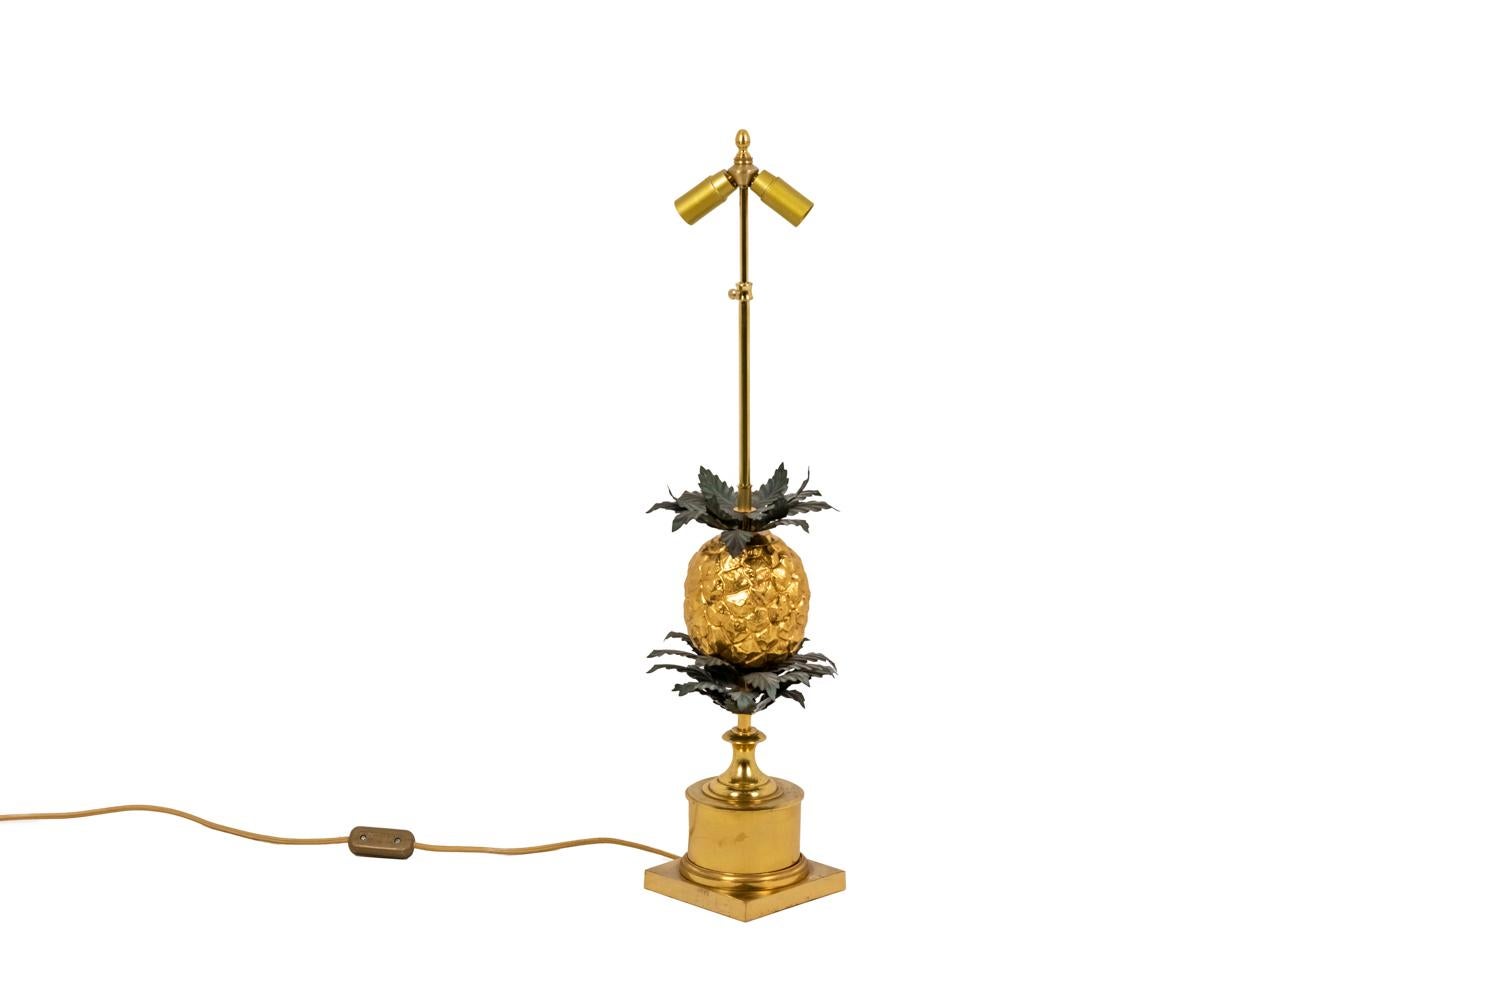 Große Lampe, die eine stilisierte Ananas aus vergoldeter Bronze darstellt und von Blättern aus geprägtem und vergoldetem Messing gekrönt wird. Unter der Ananas wird der Baum durch eine wichtige dreifache Blattkrone aus vergoldetem Messing